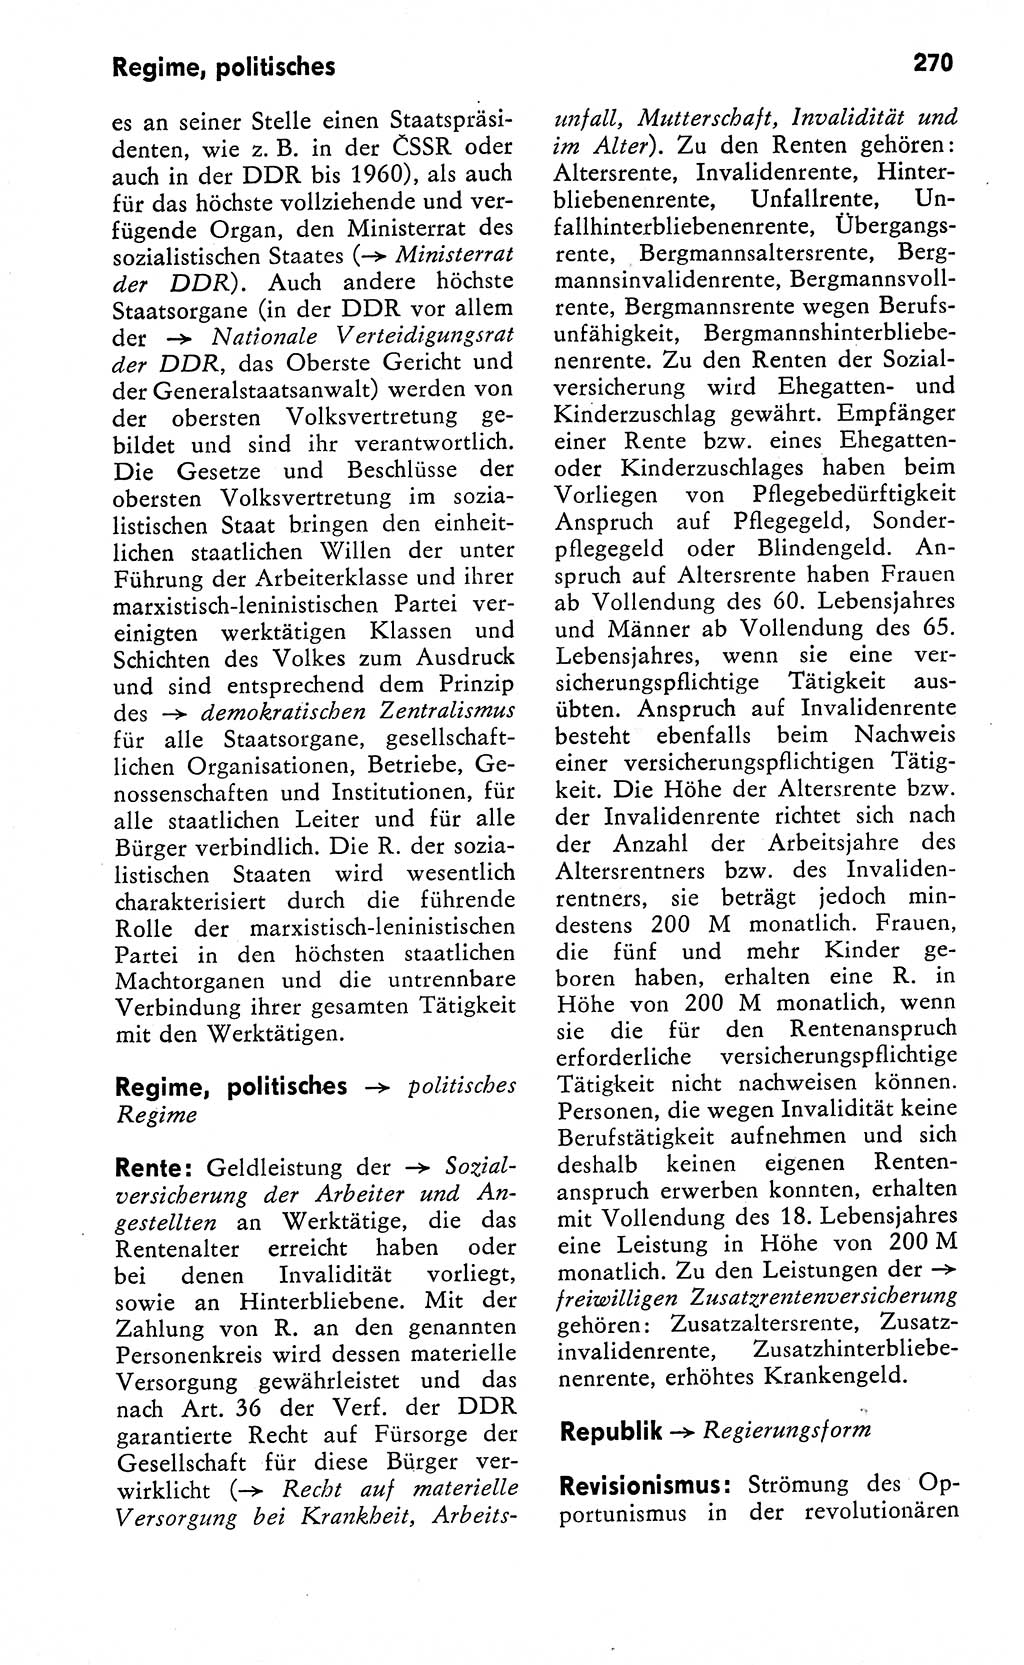 Wörterbuch zum sozialistischen Staat [Deutsche Demokratische Republik (DDR)] 1974, Seite 270 (Wb. soz. St. DDR 1974, S. 270)